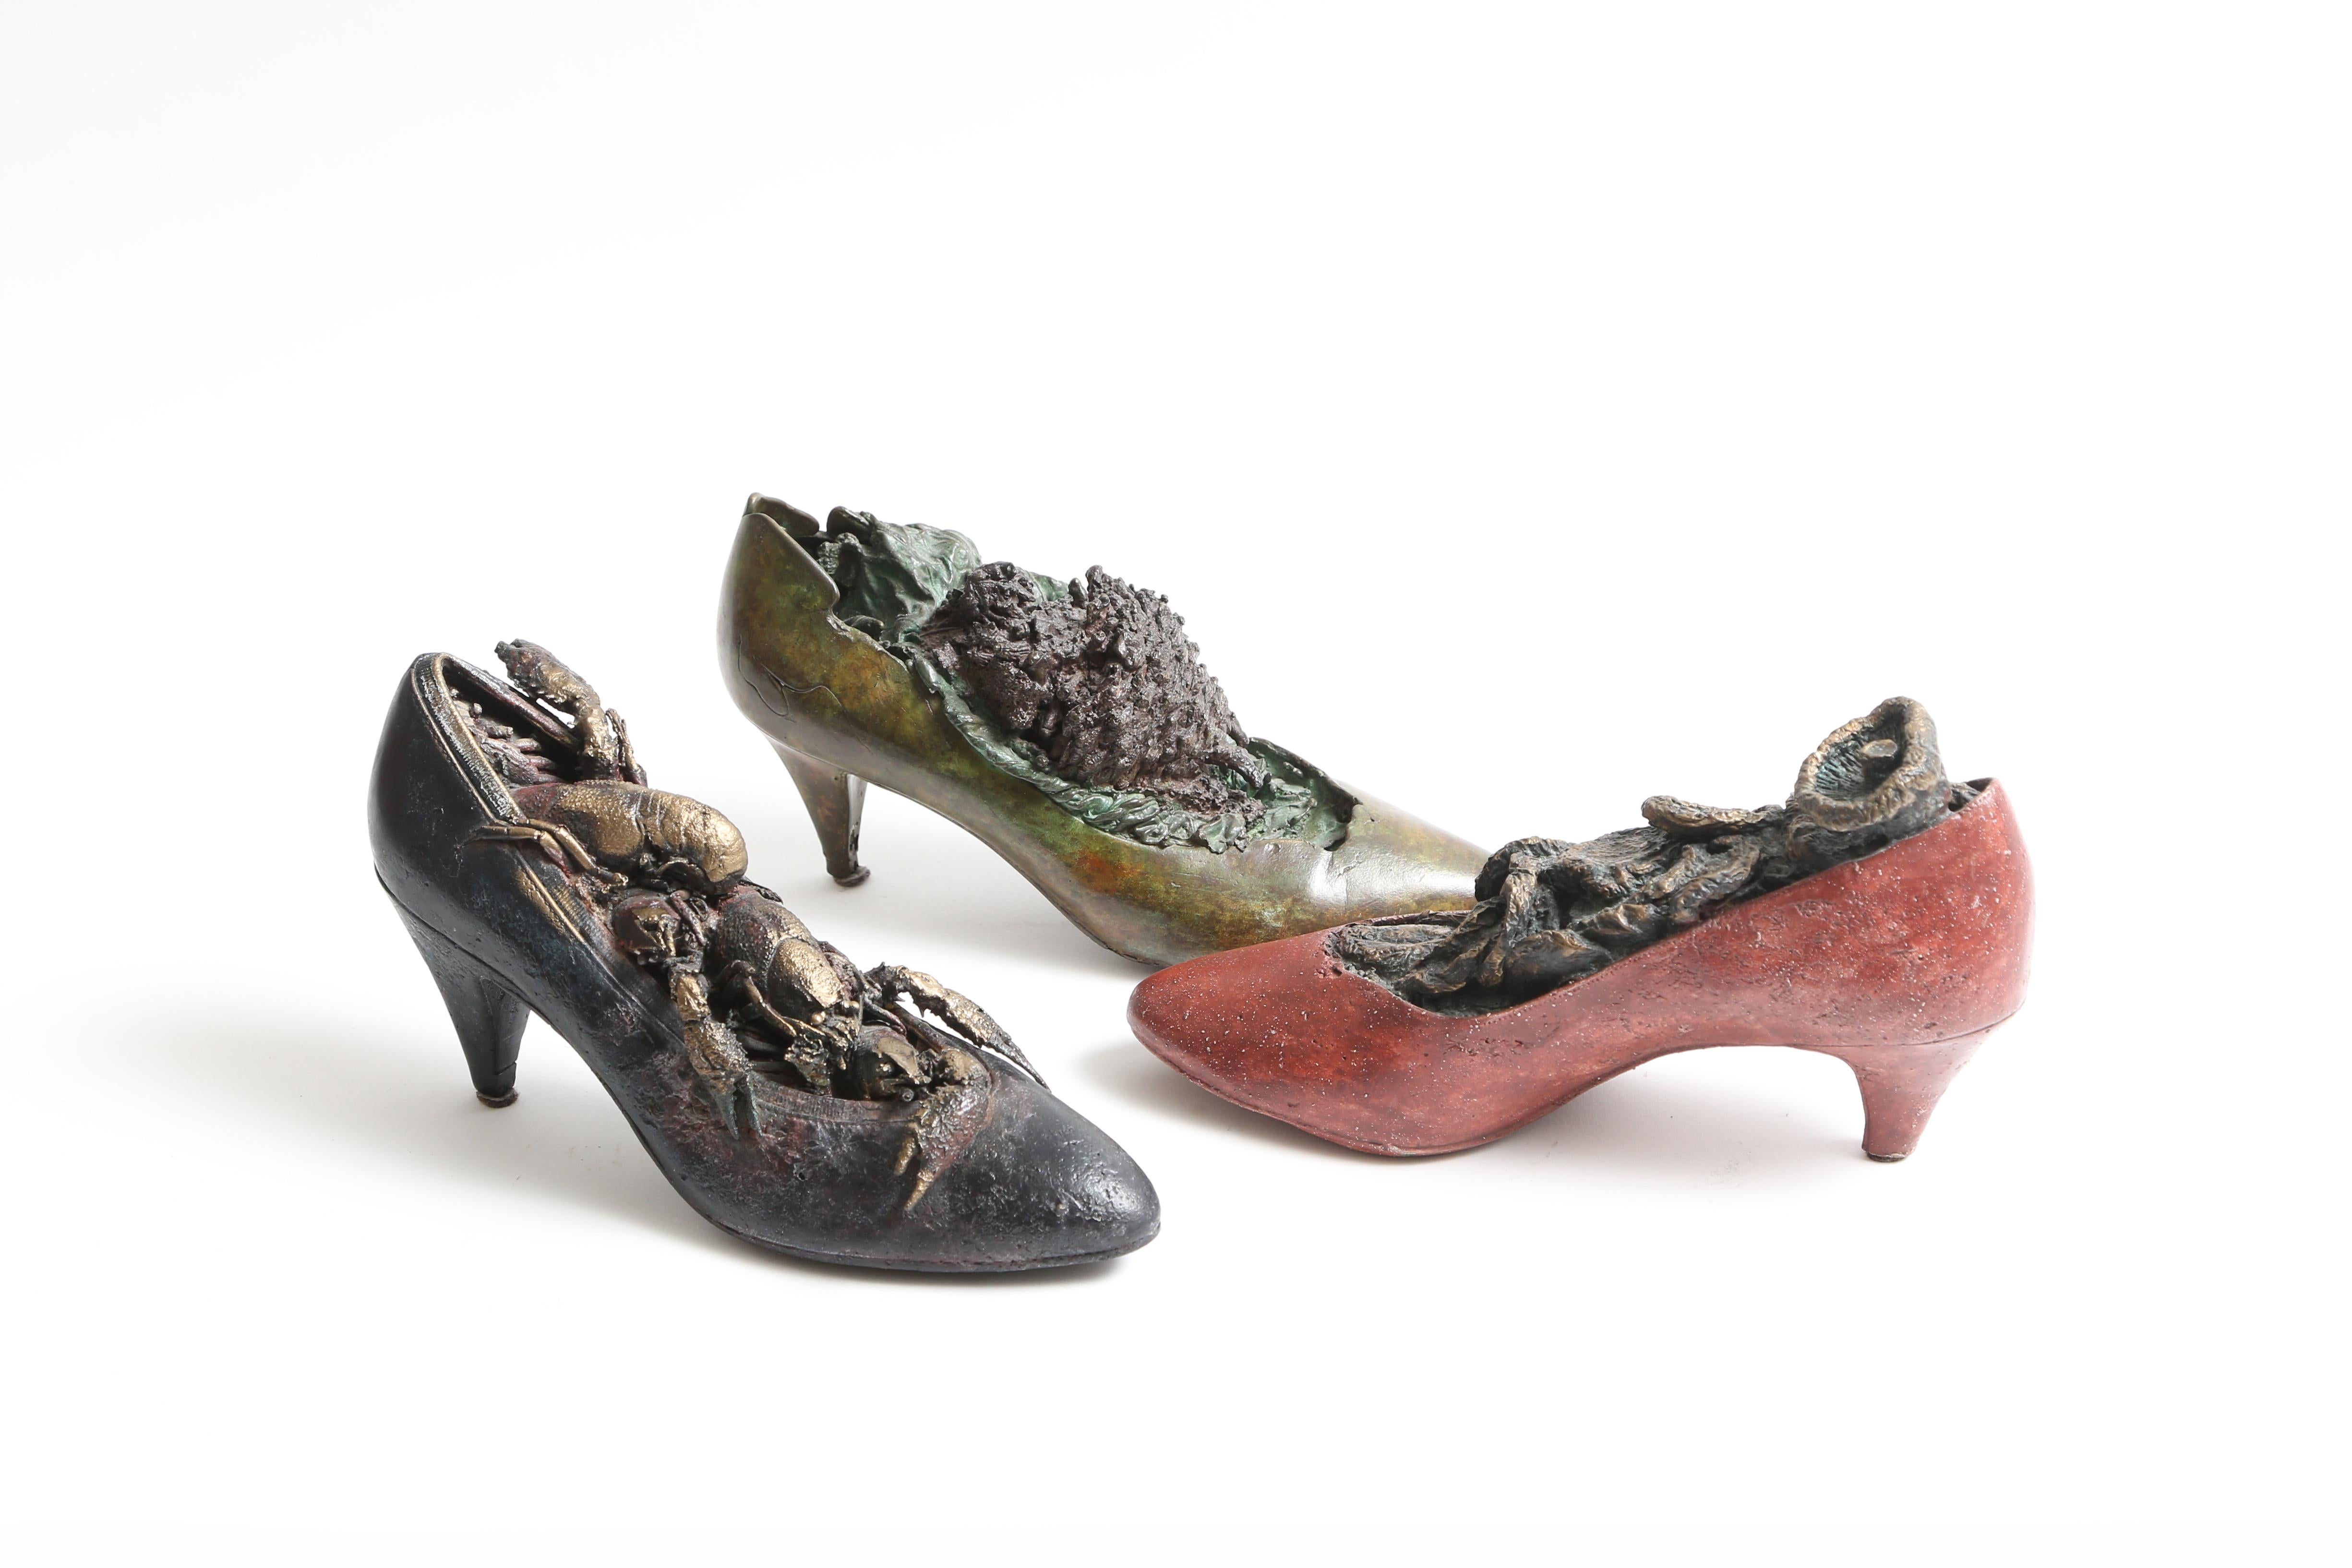 Steve Tobin Painted-Bronze Shoe Sculptures 1